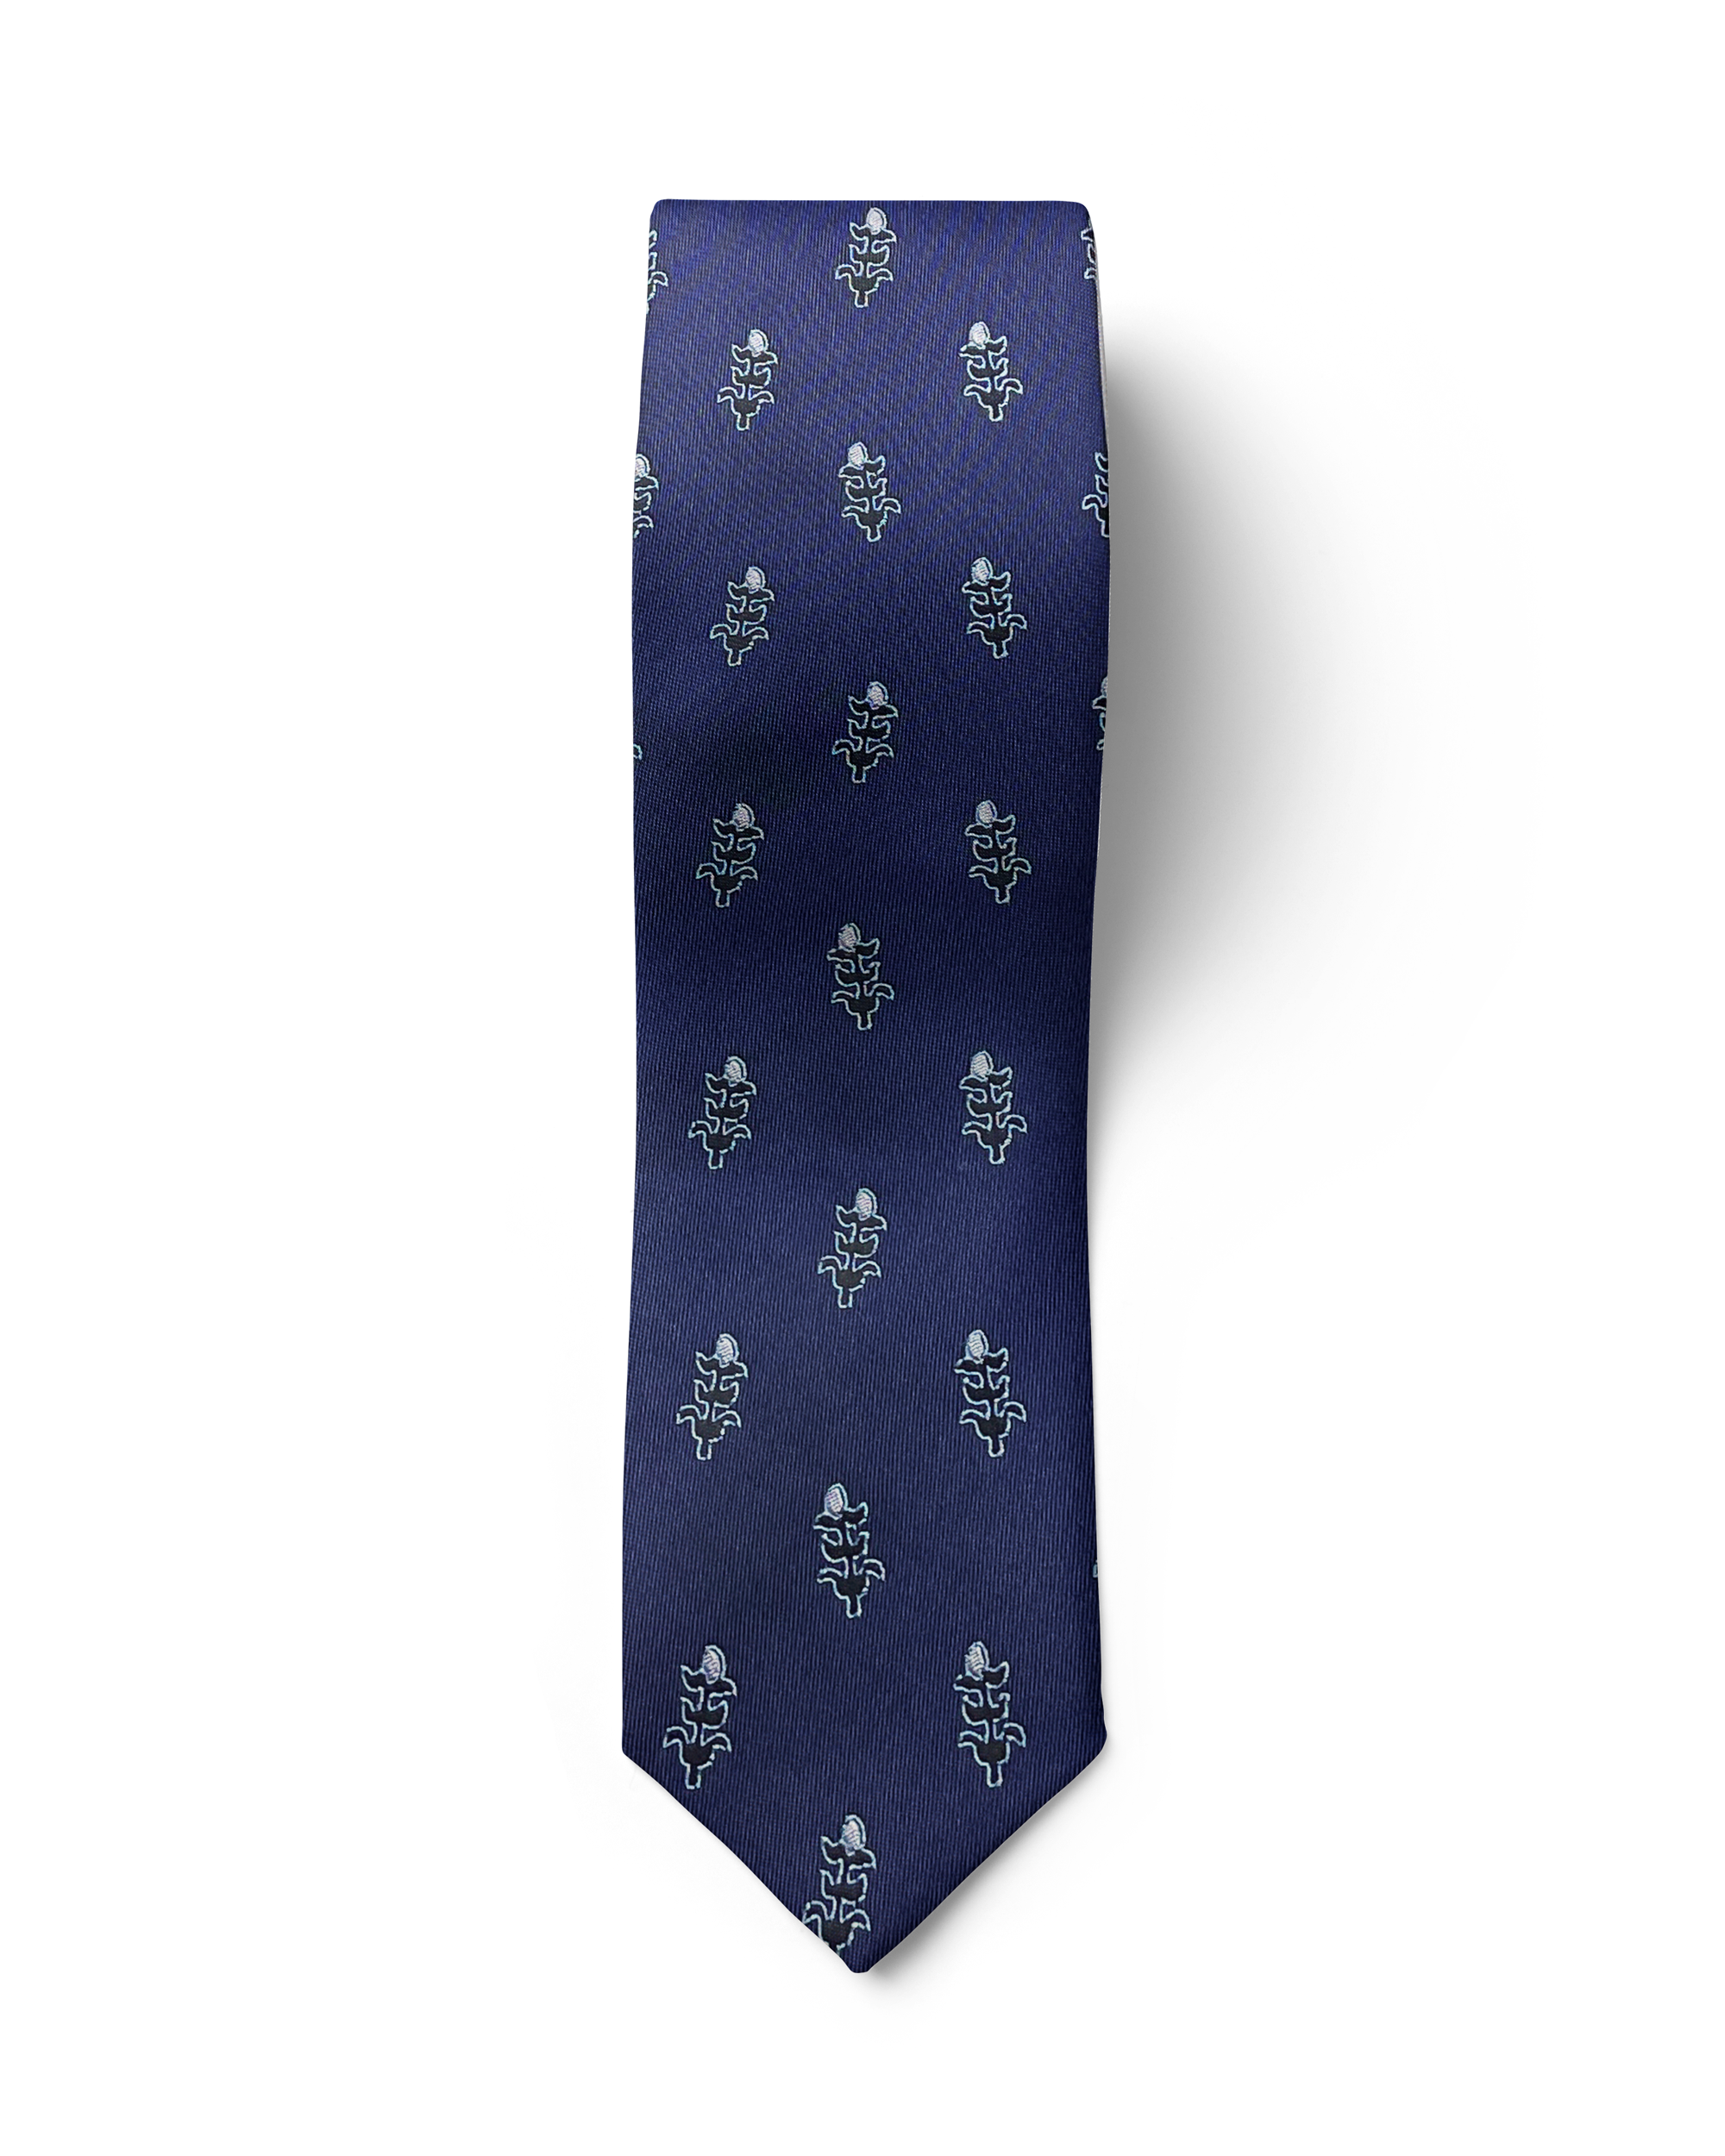 Tolige Silk Tie (Navy Blue)